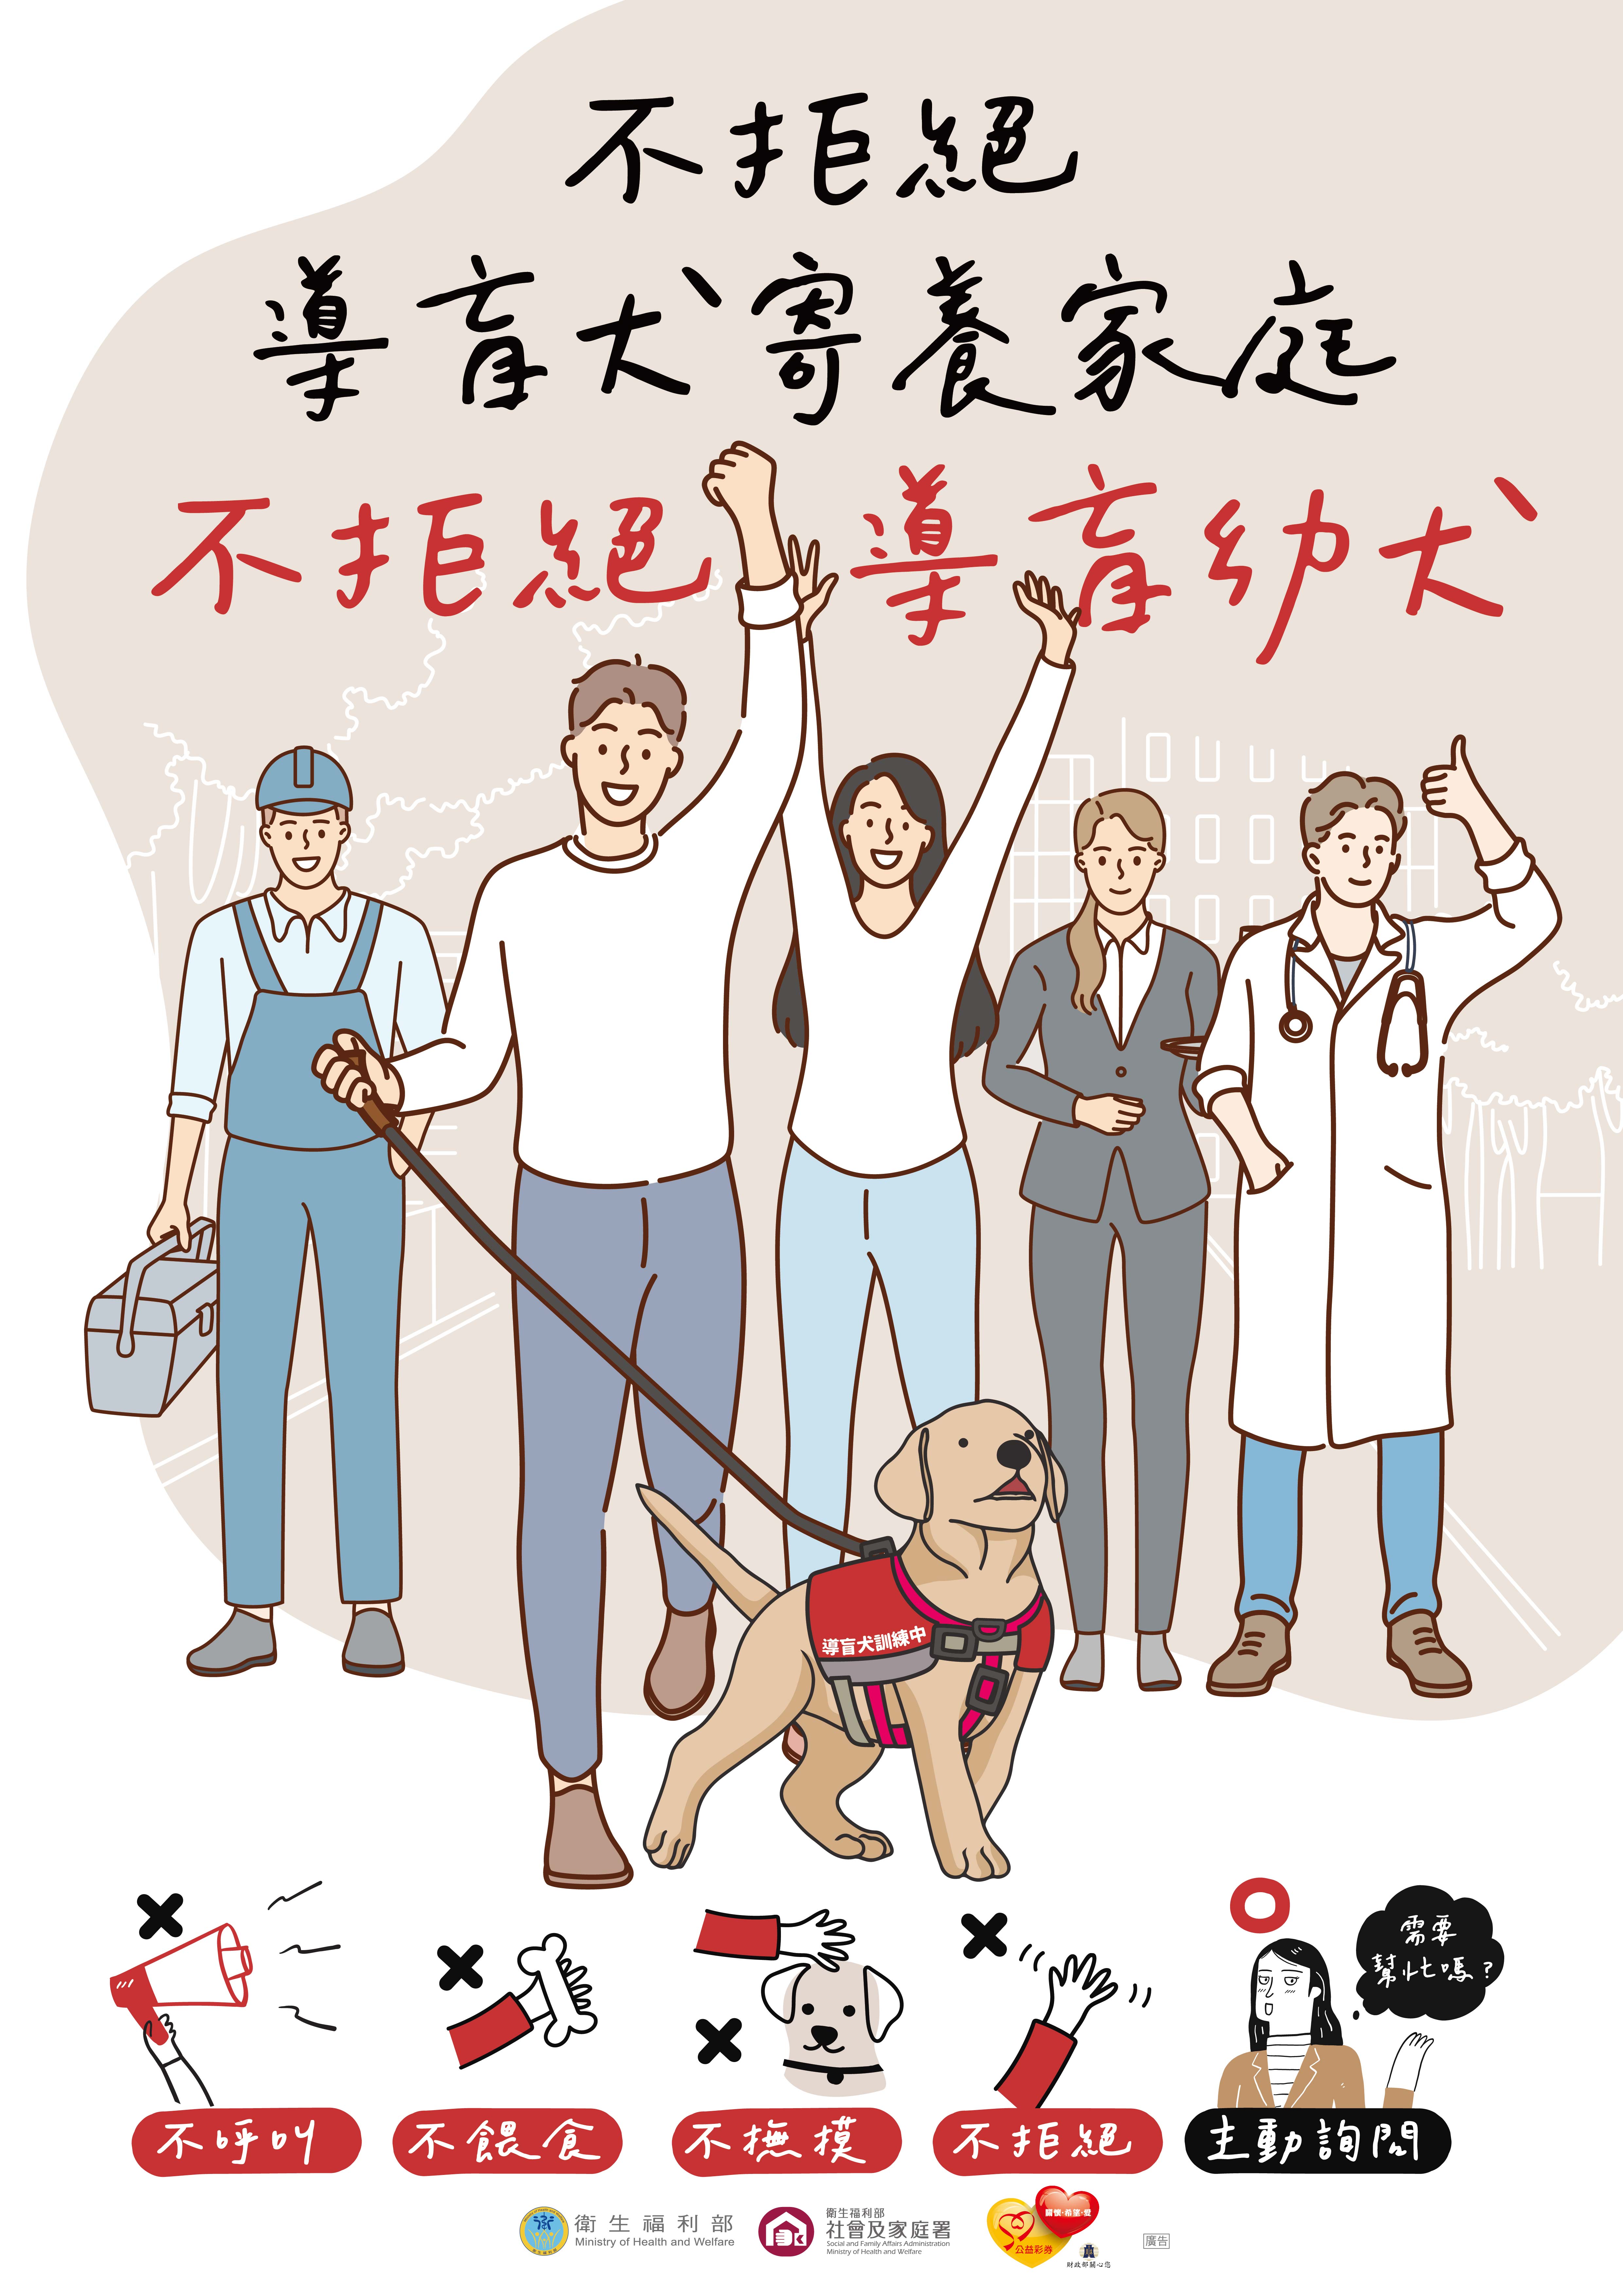 衛生福利部社會及家庭署製作「導盲犬友善環境」宣導海報